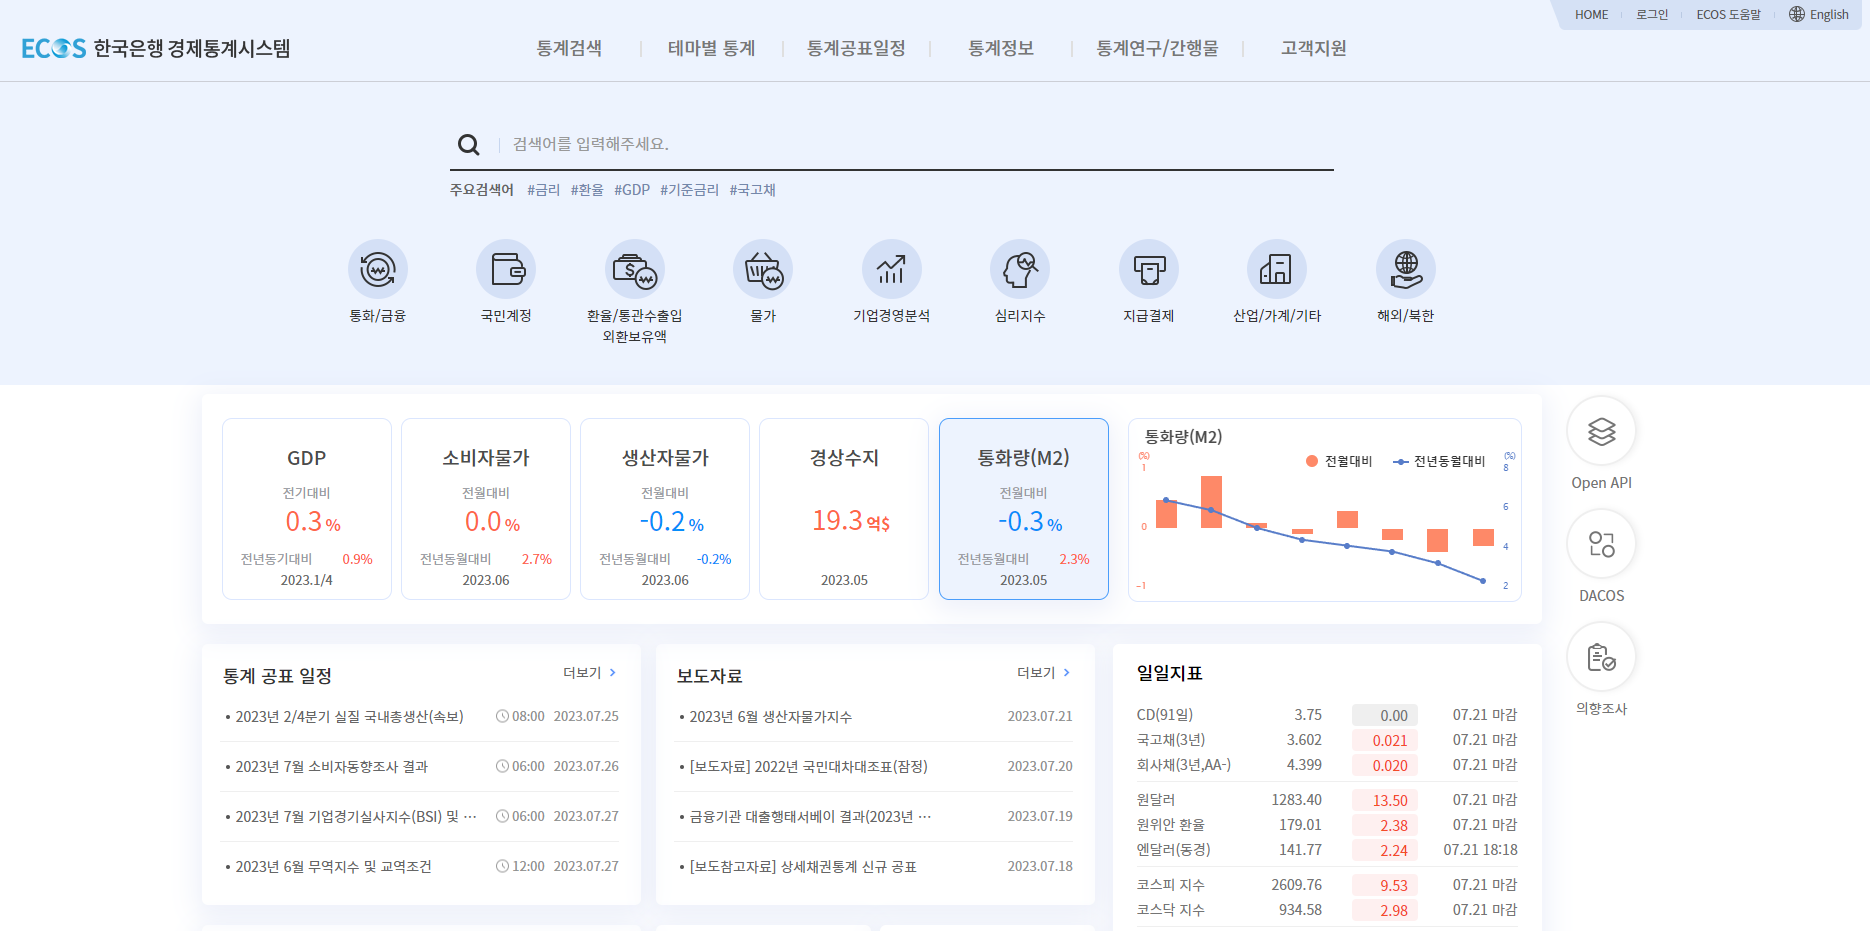 한국은행 경제통계시스템 메인 화면